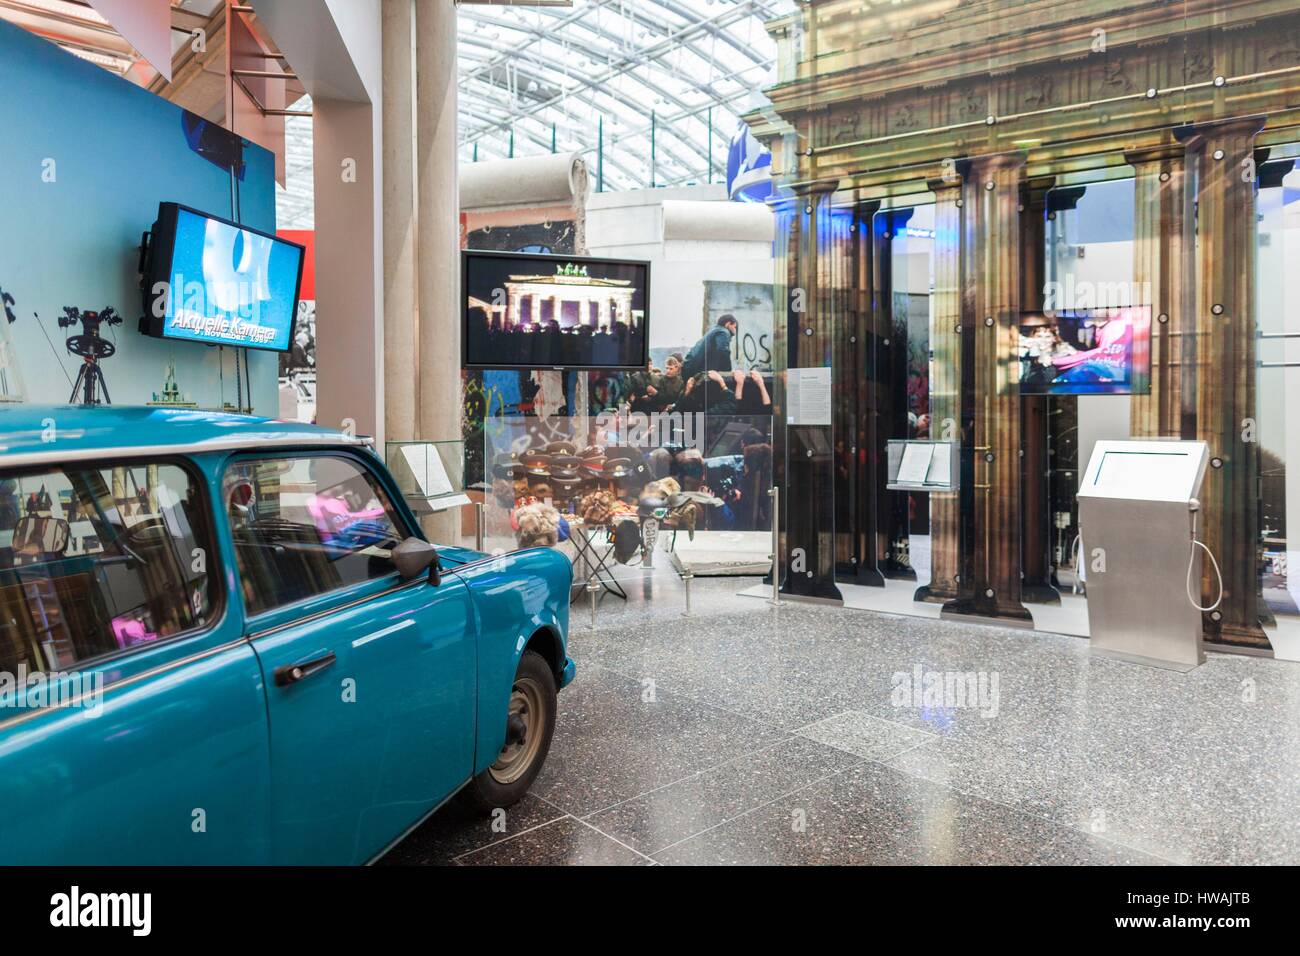 Allemagne, Nordrhein-Westfalen, Bonn, Museumsmeile, Musée de la République fédérale d'Allemagne, Allemand de l'voiture Trabant Banque D'Images